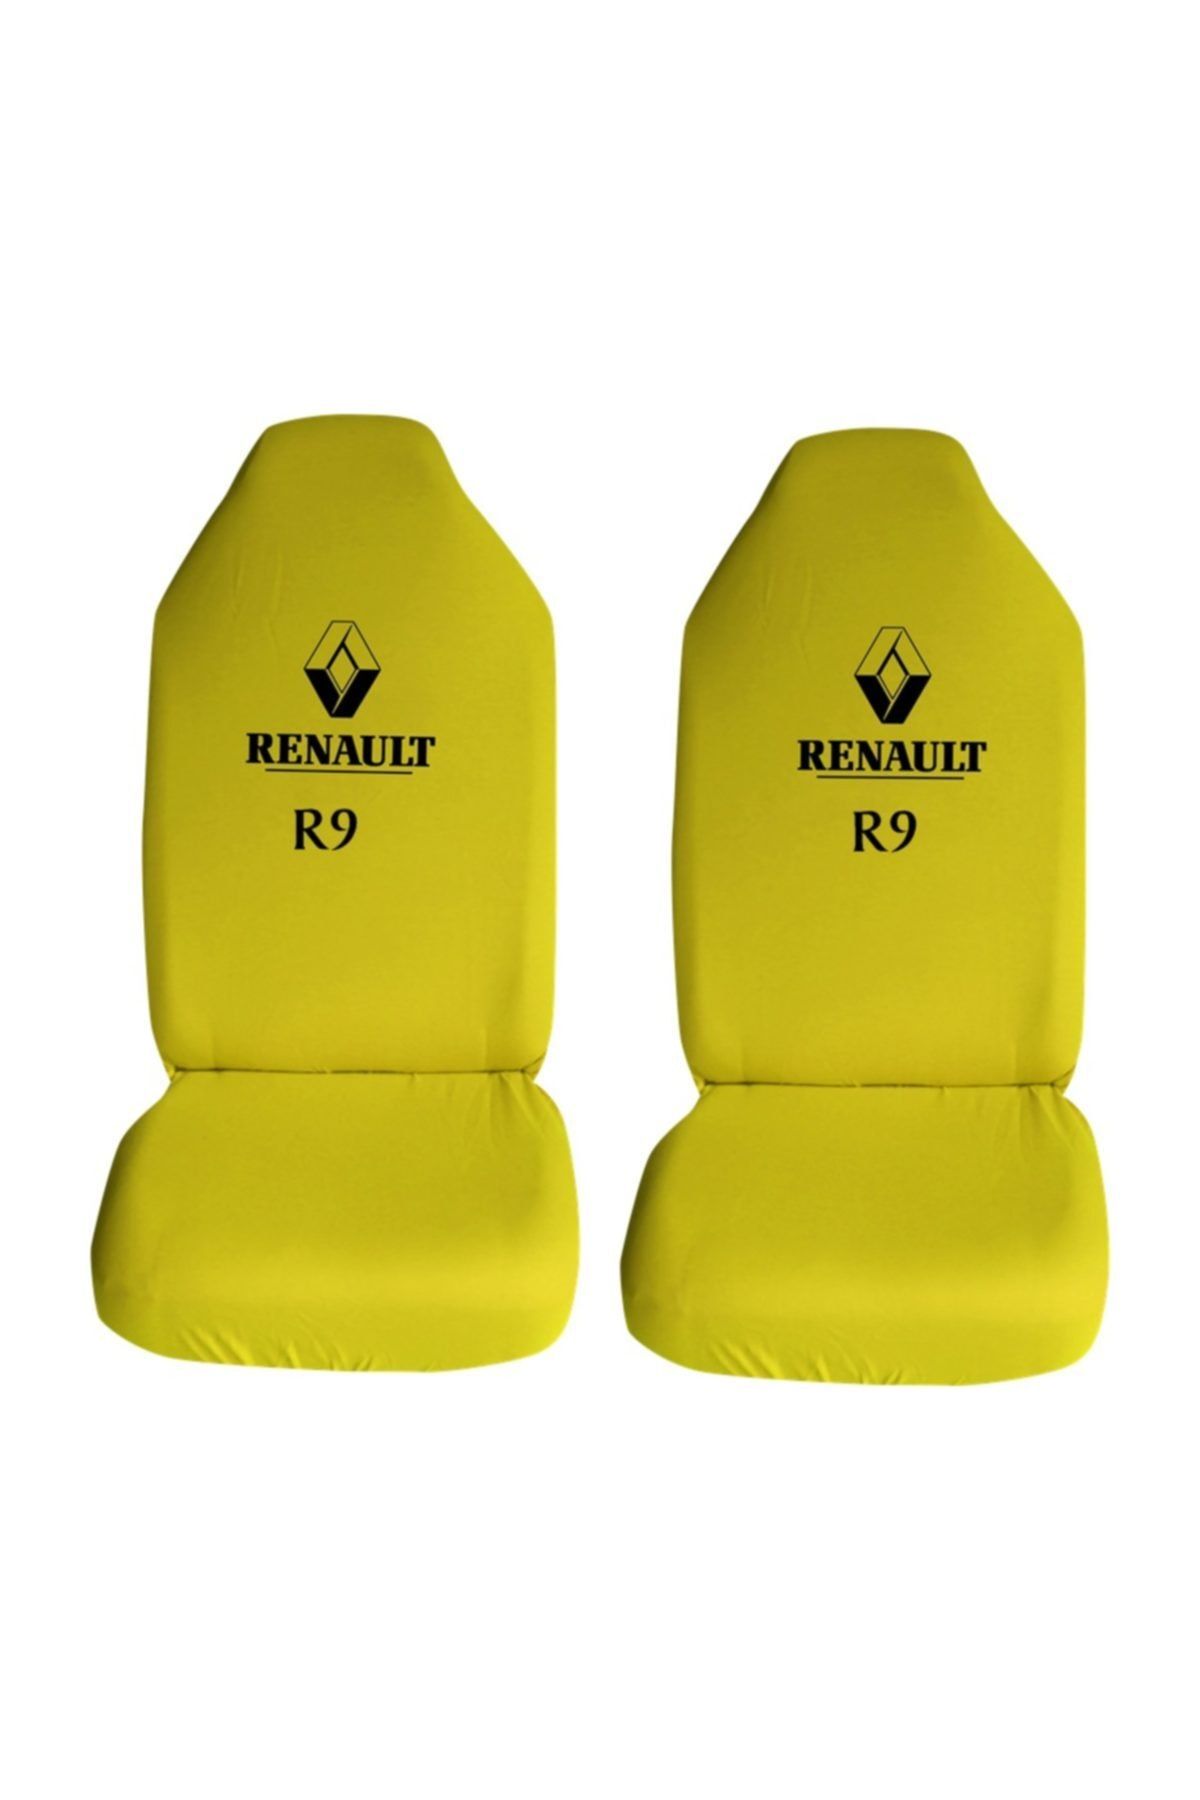 Modatools Renault R 9 Özel Araba Oto Koltuk Kılıfı Ön Arka Takım Sarı Penye Araca Özel Baskılı